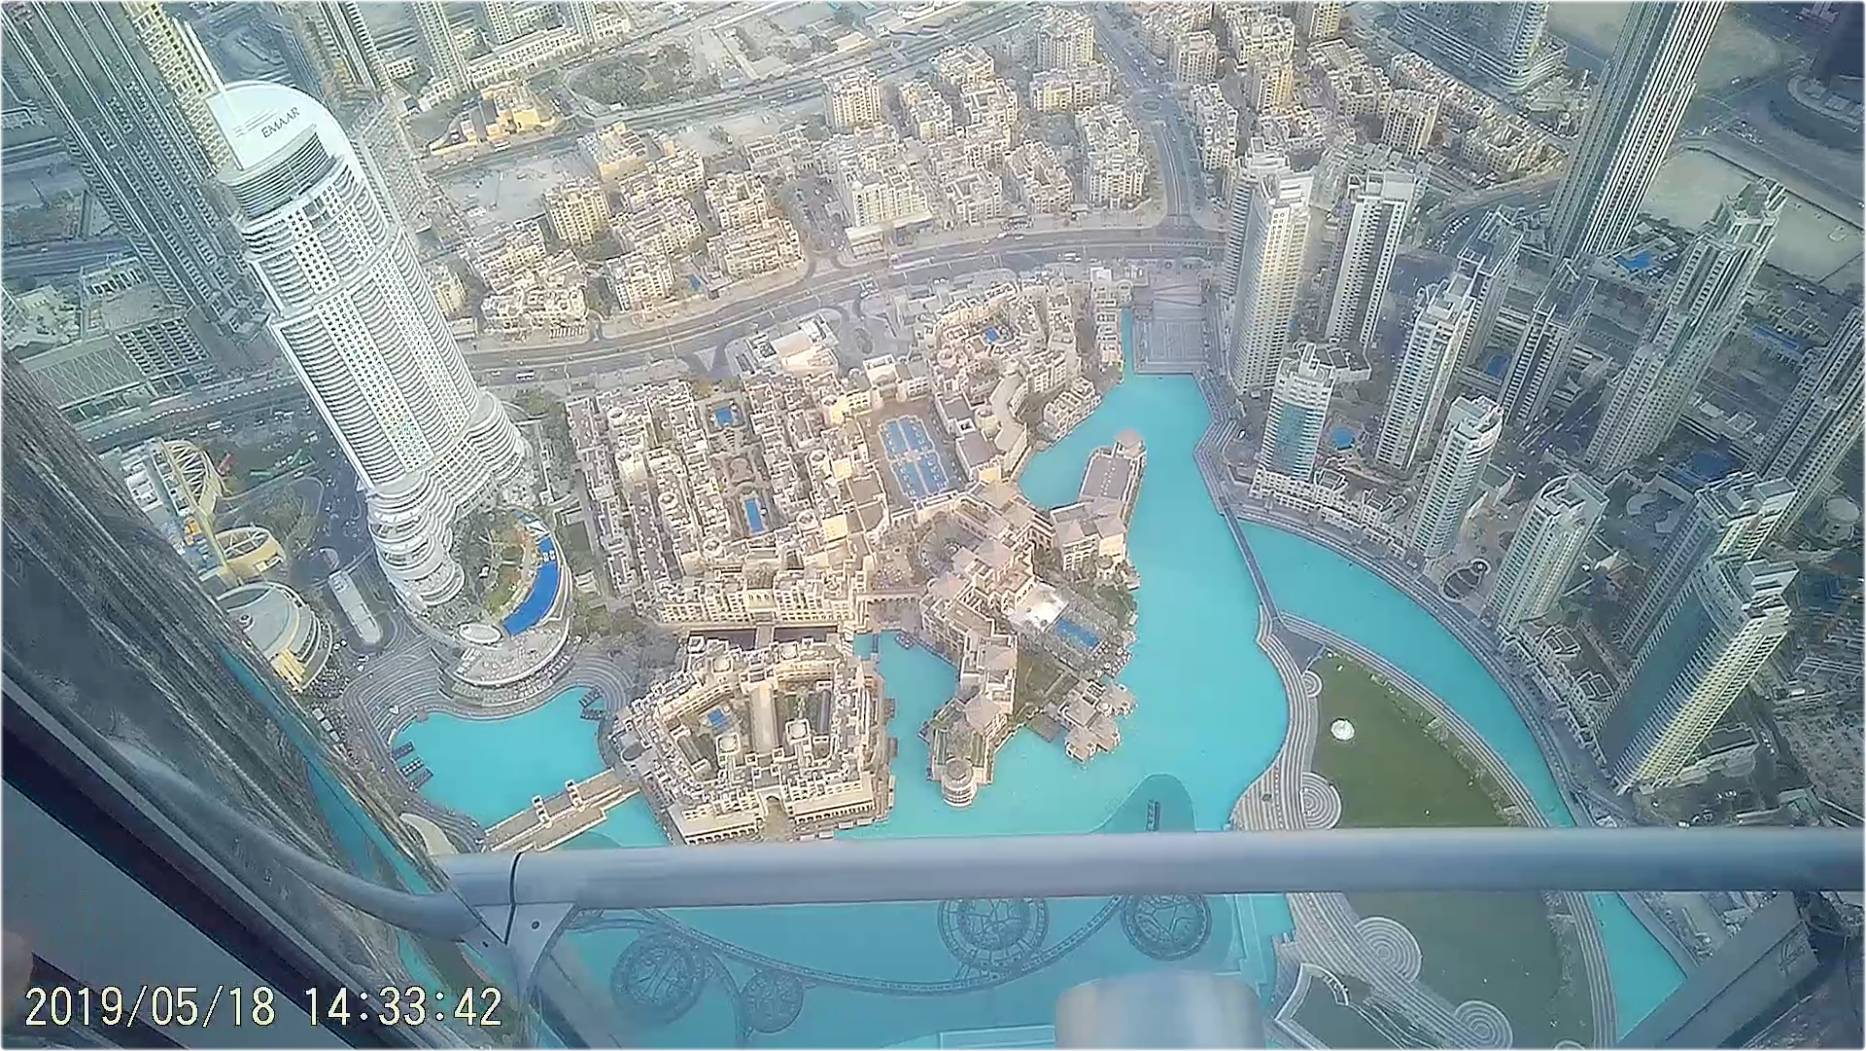 Billede taget med kamera brille: Udsigt i Dubai